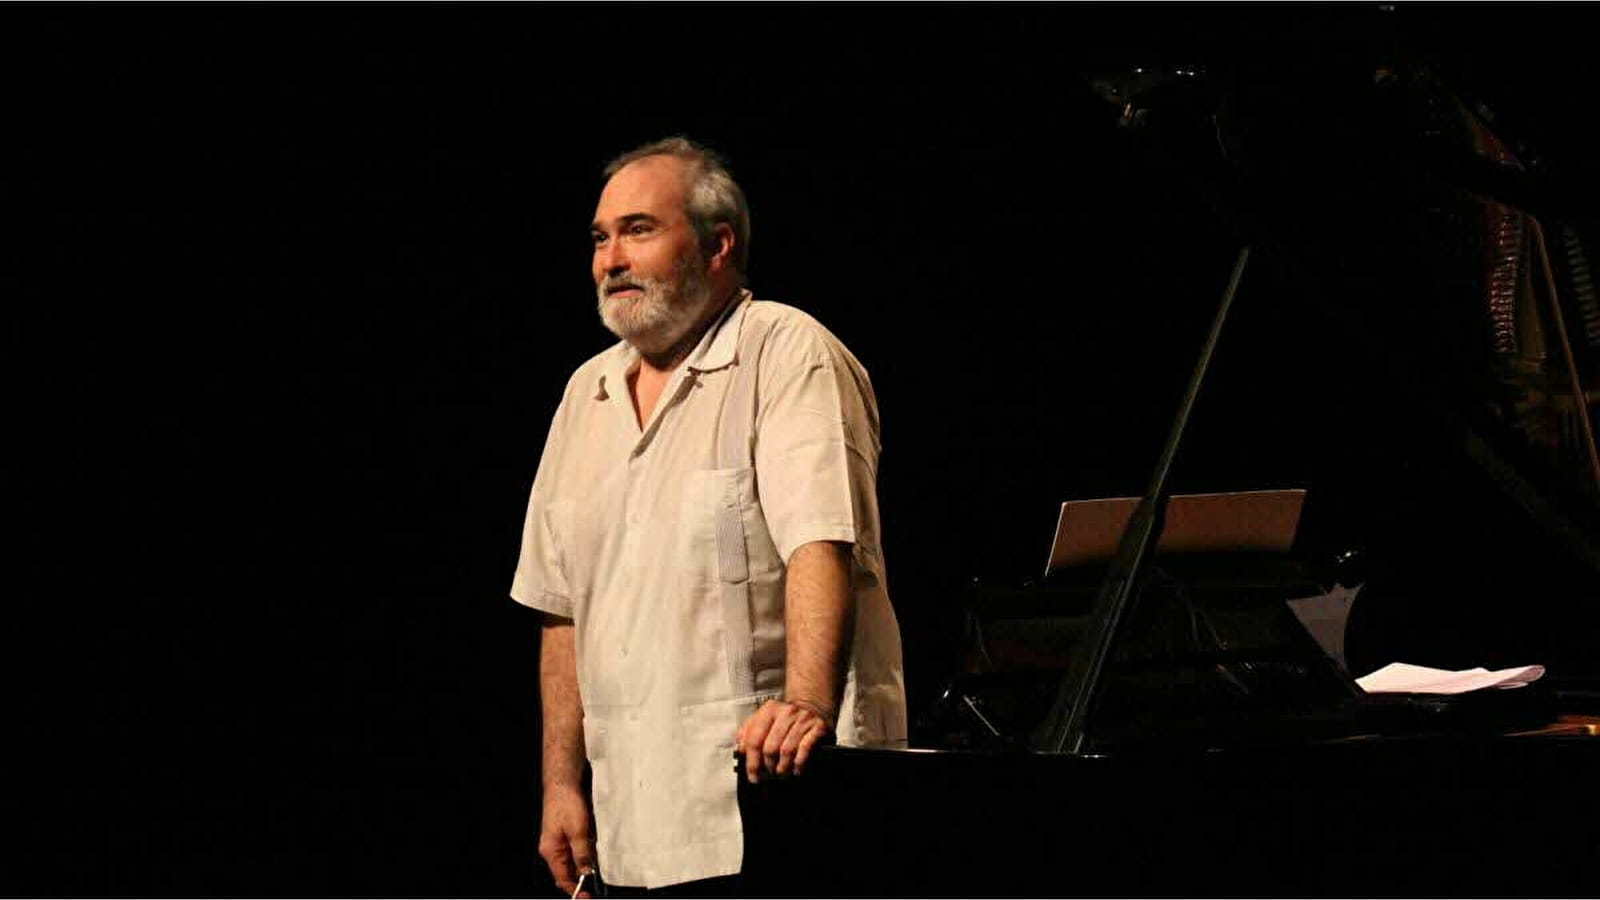 D'aujourd'hui à demain - Jorge Pepi-Alos, récital de piano